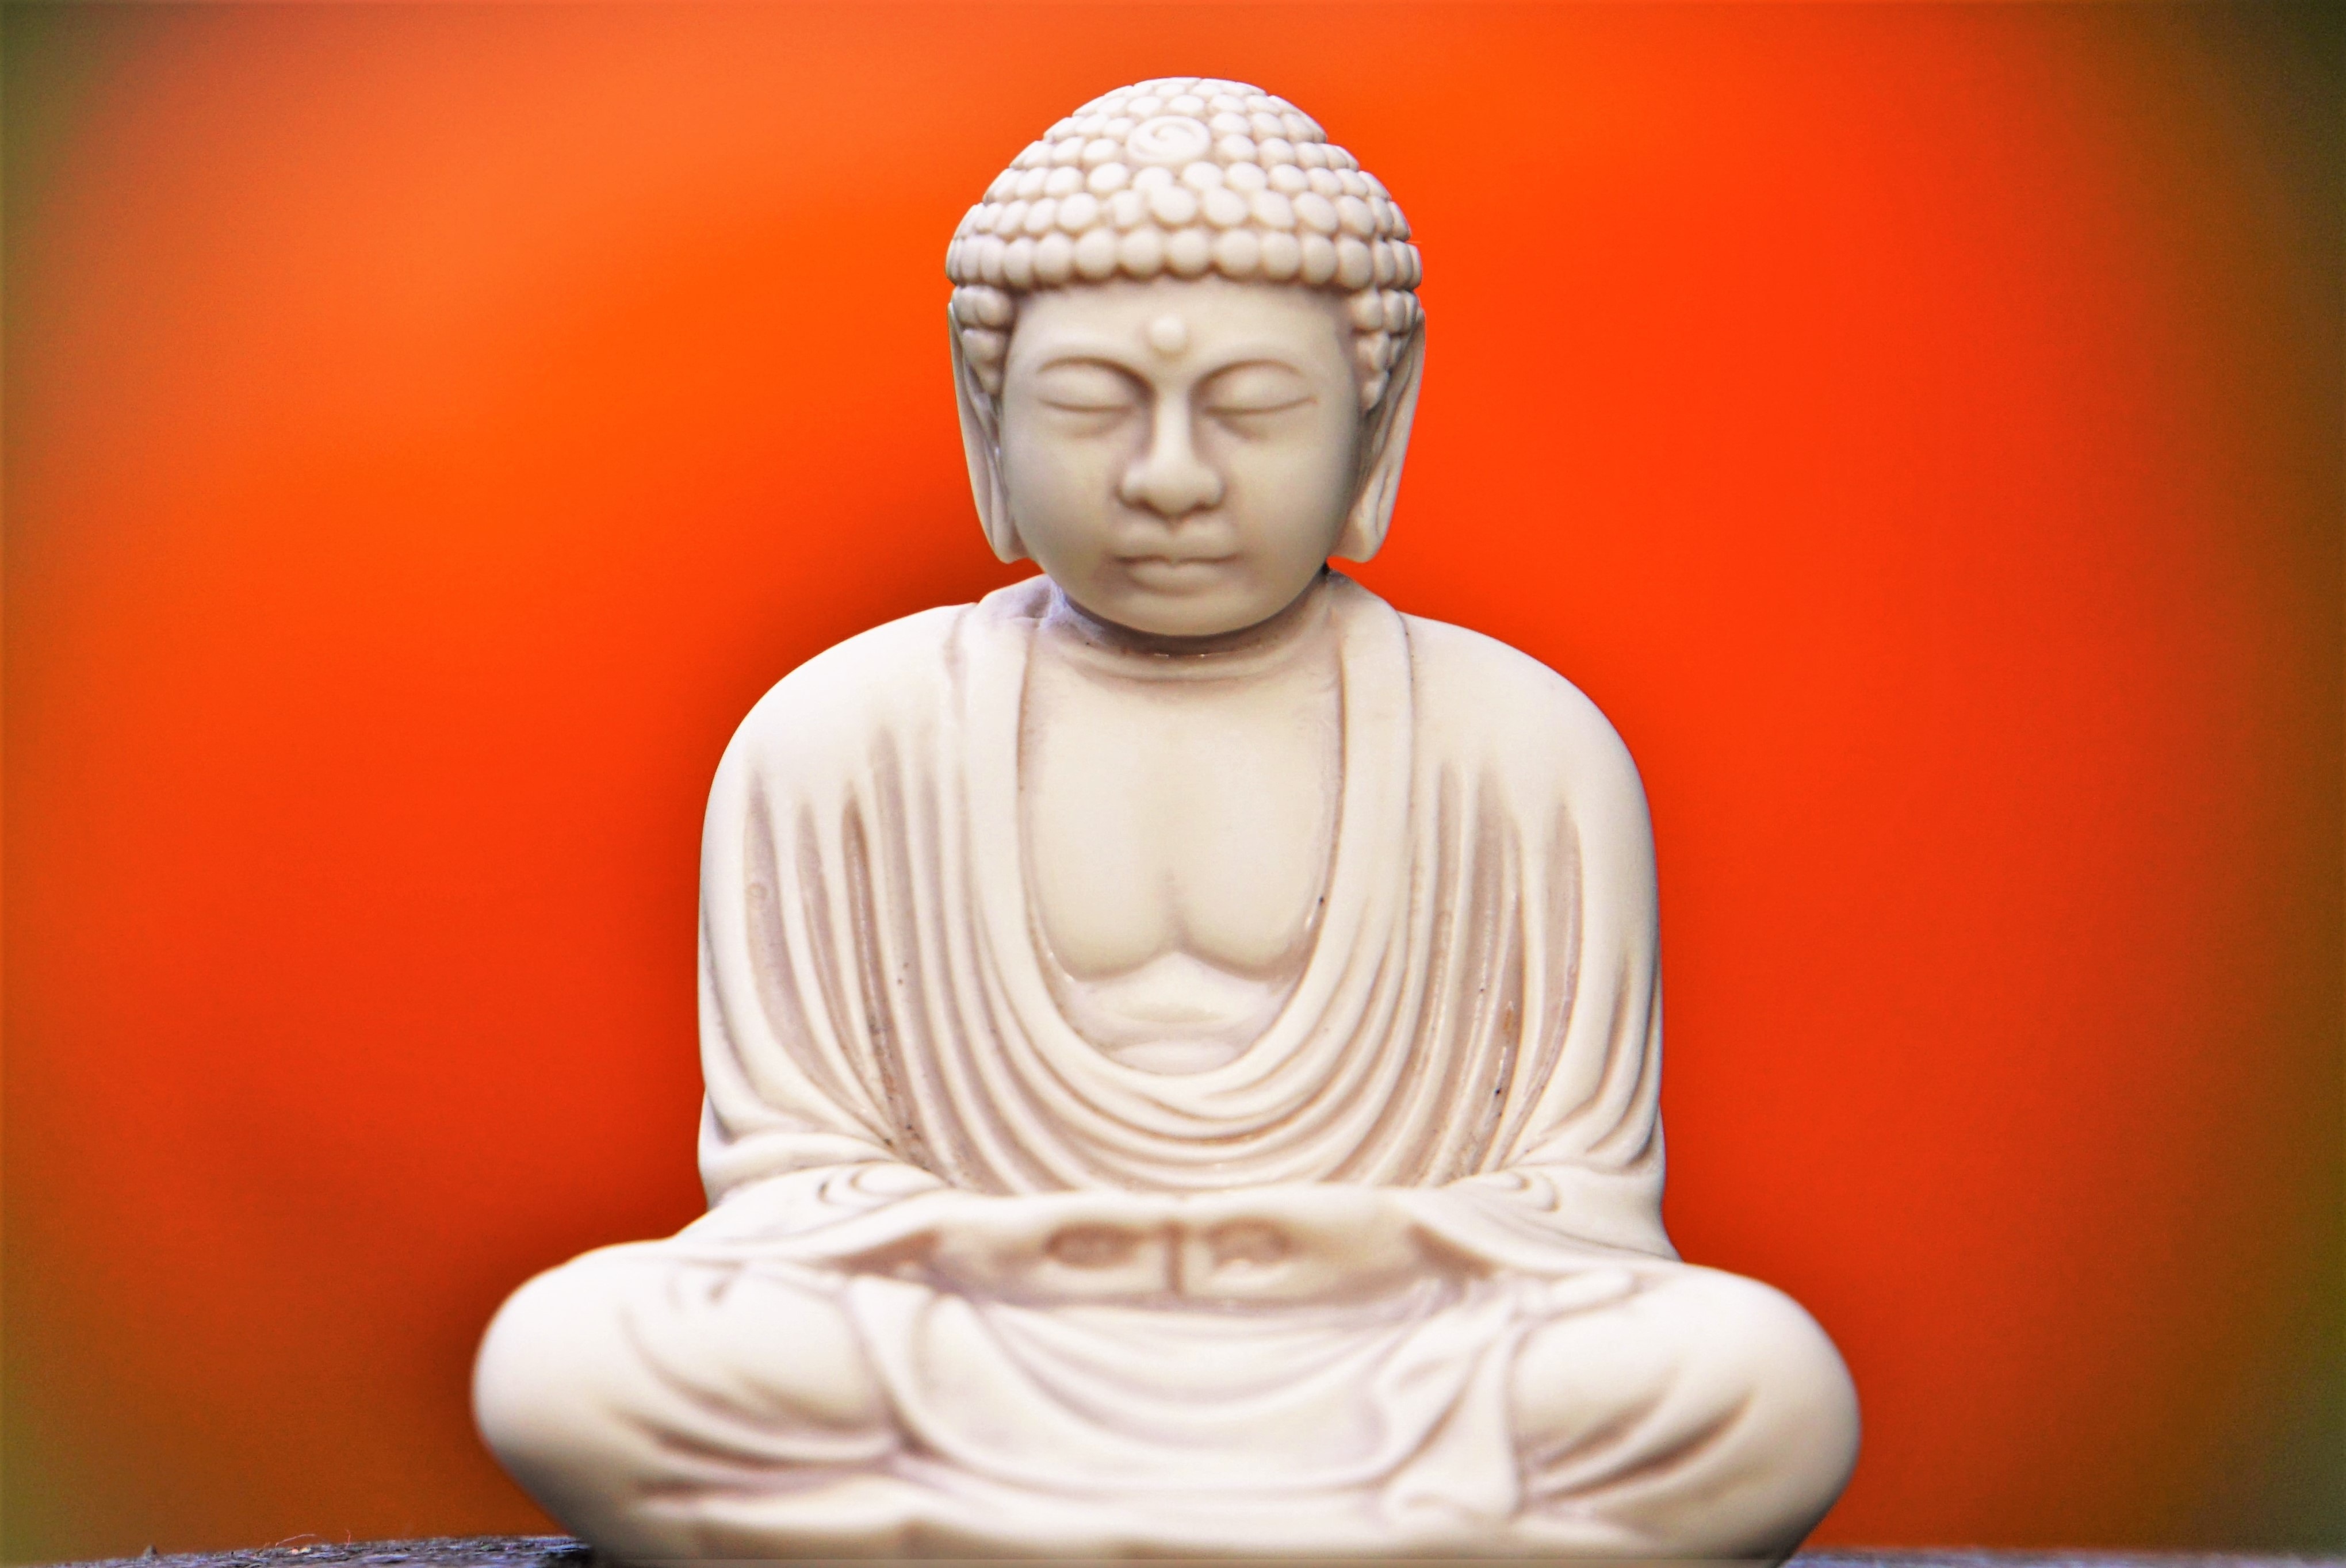 white sitting buddha figurine